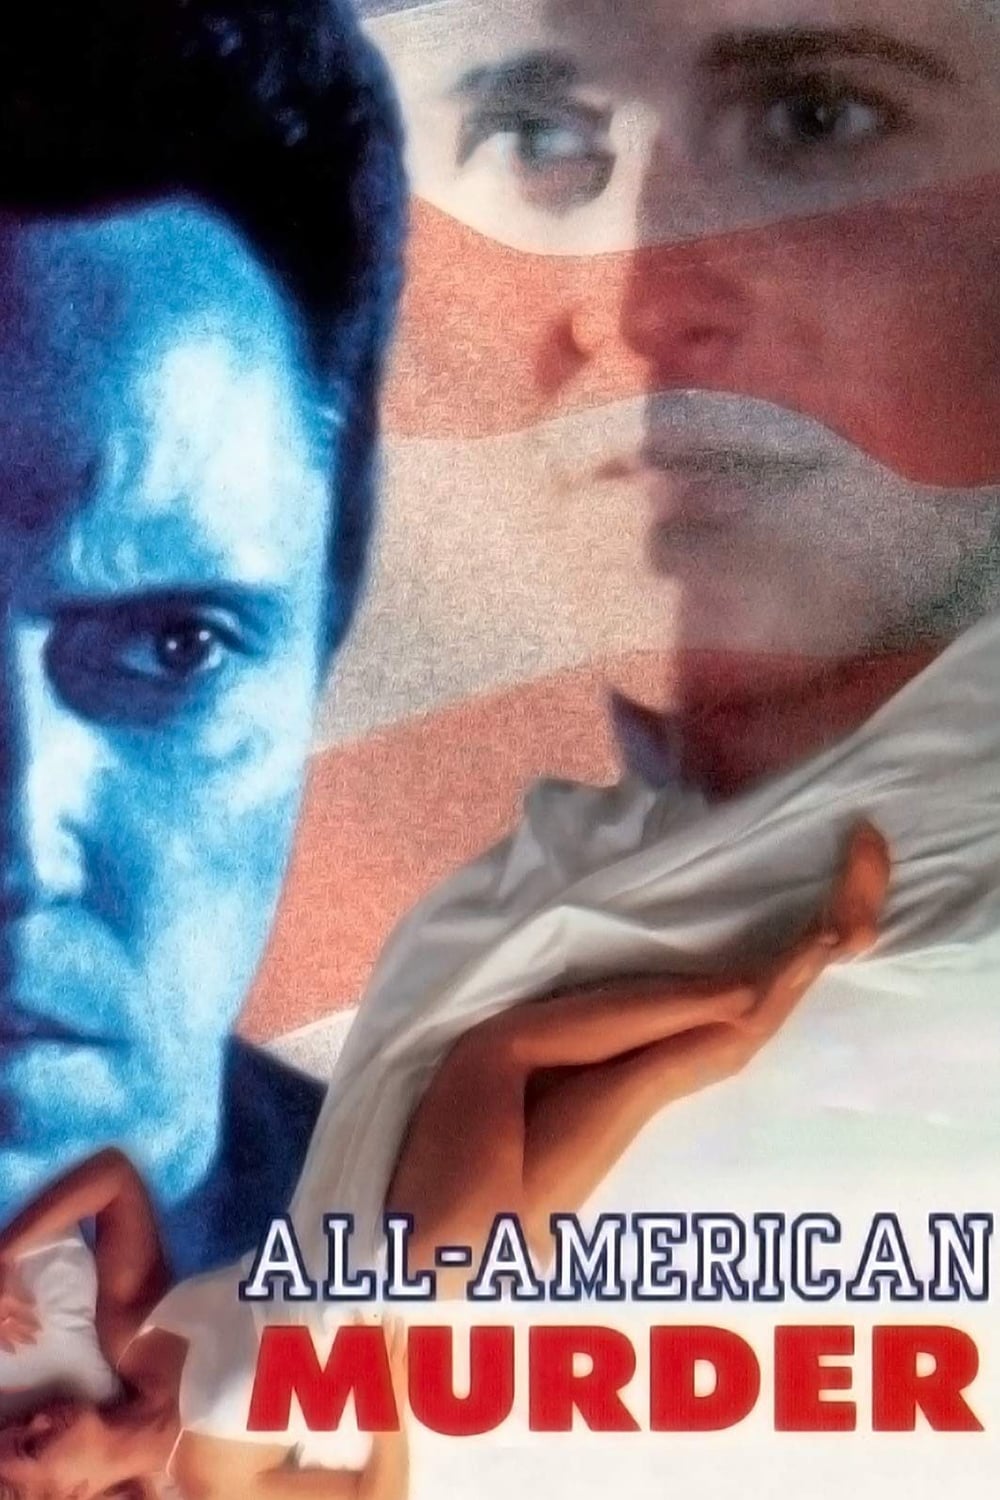 All-American Murder (1991) starring Christopher Walken on DVD on DVD